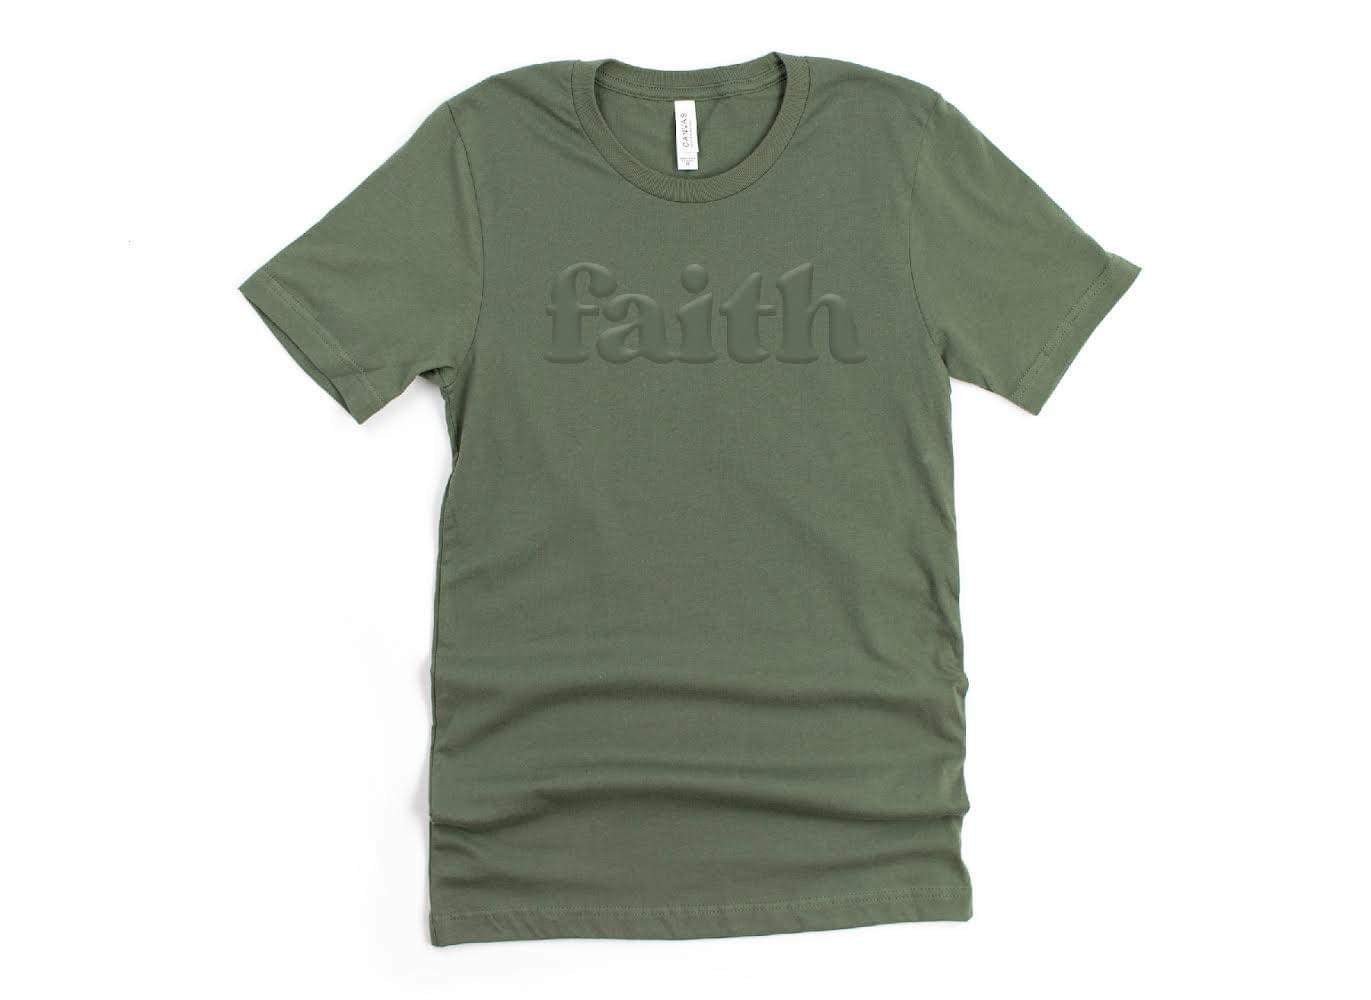 "Faith" in Puff Paint